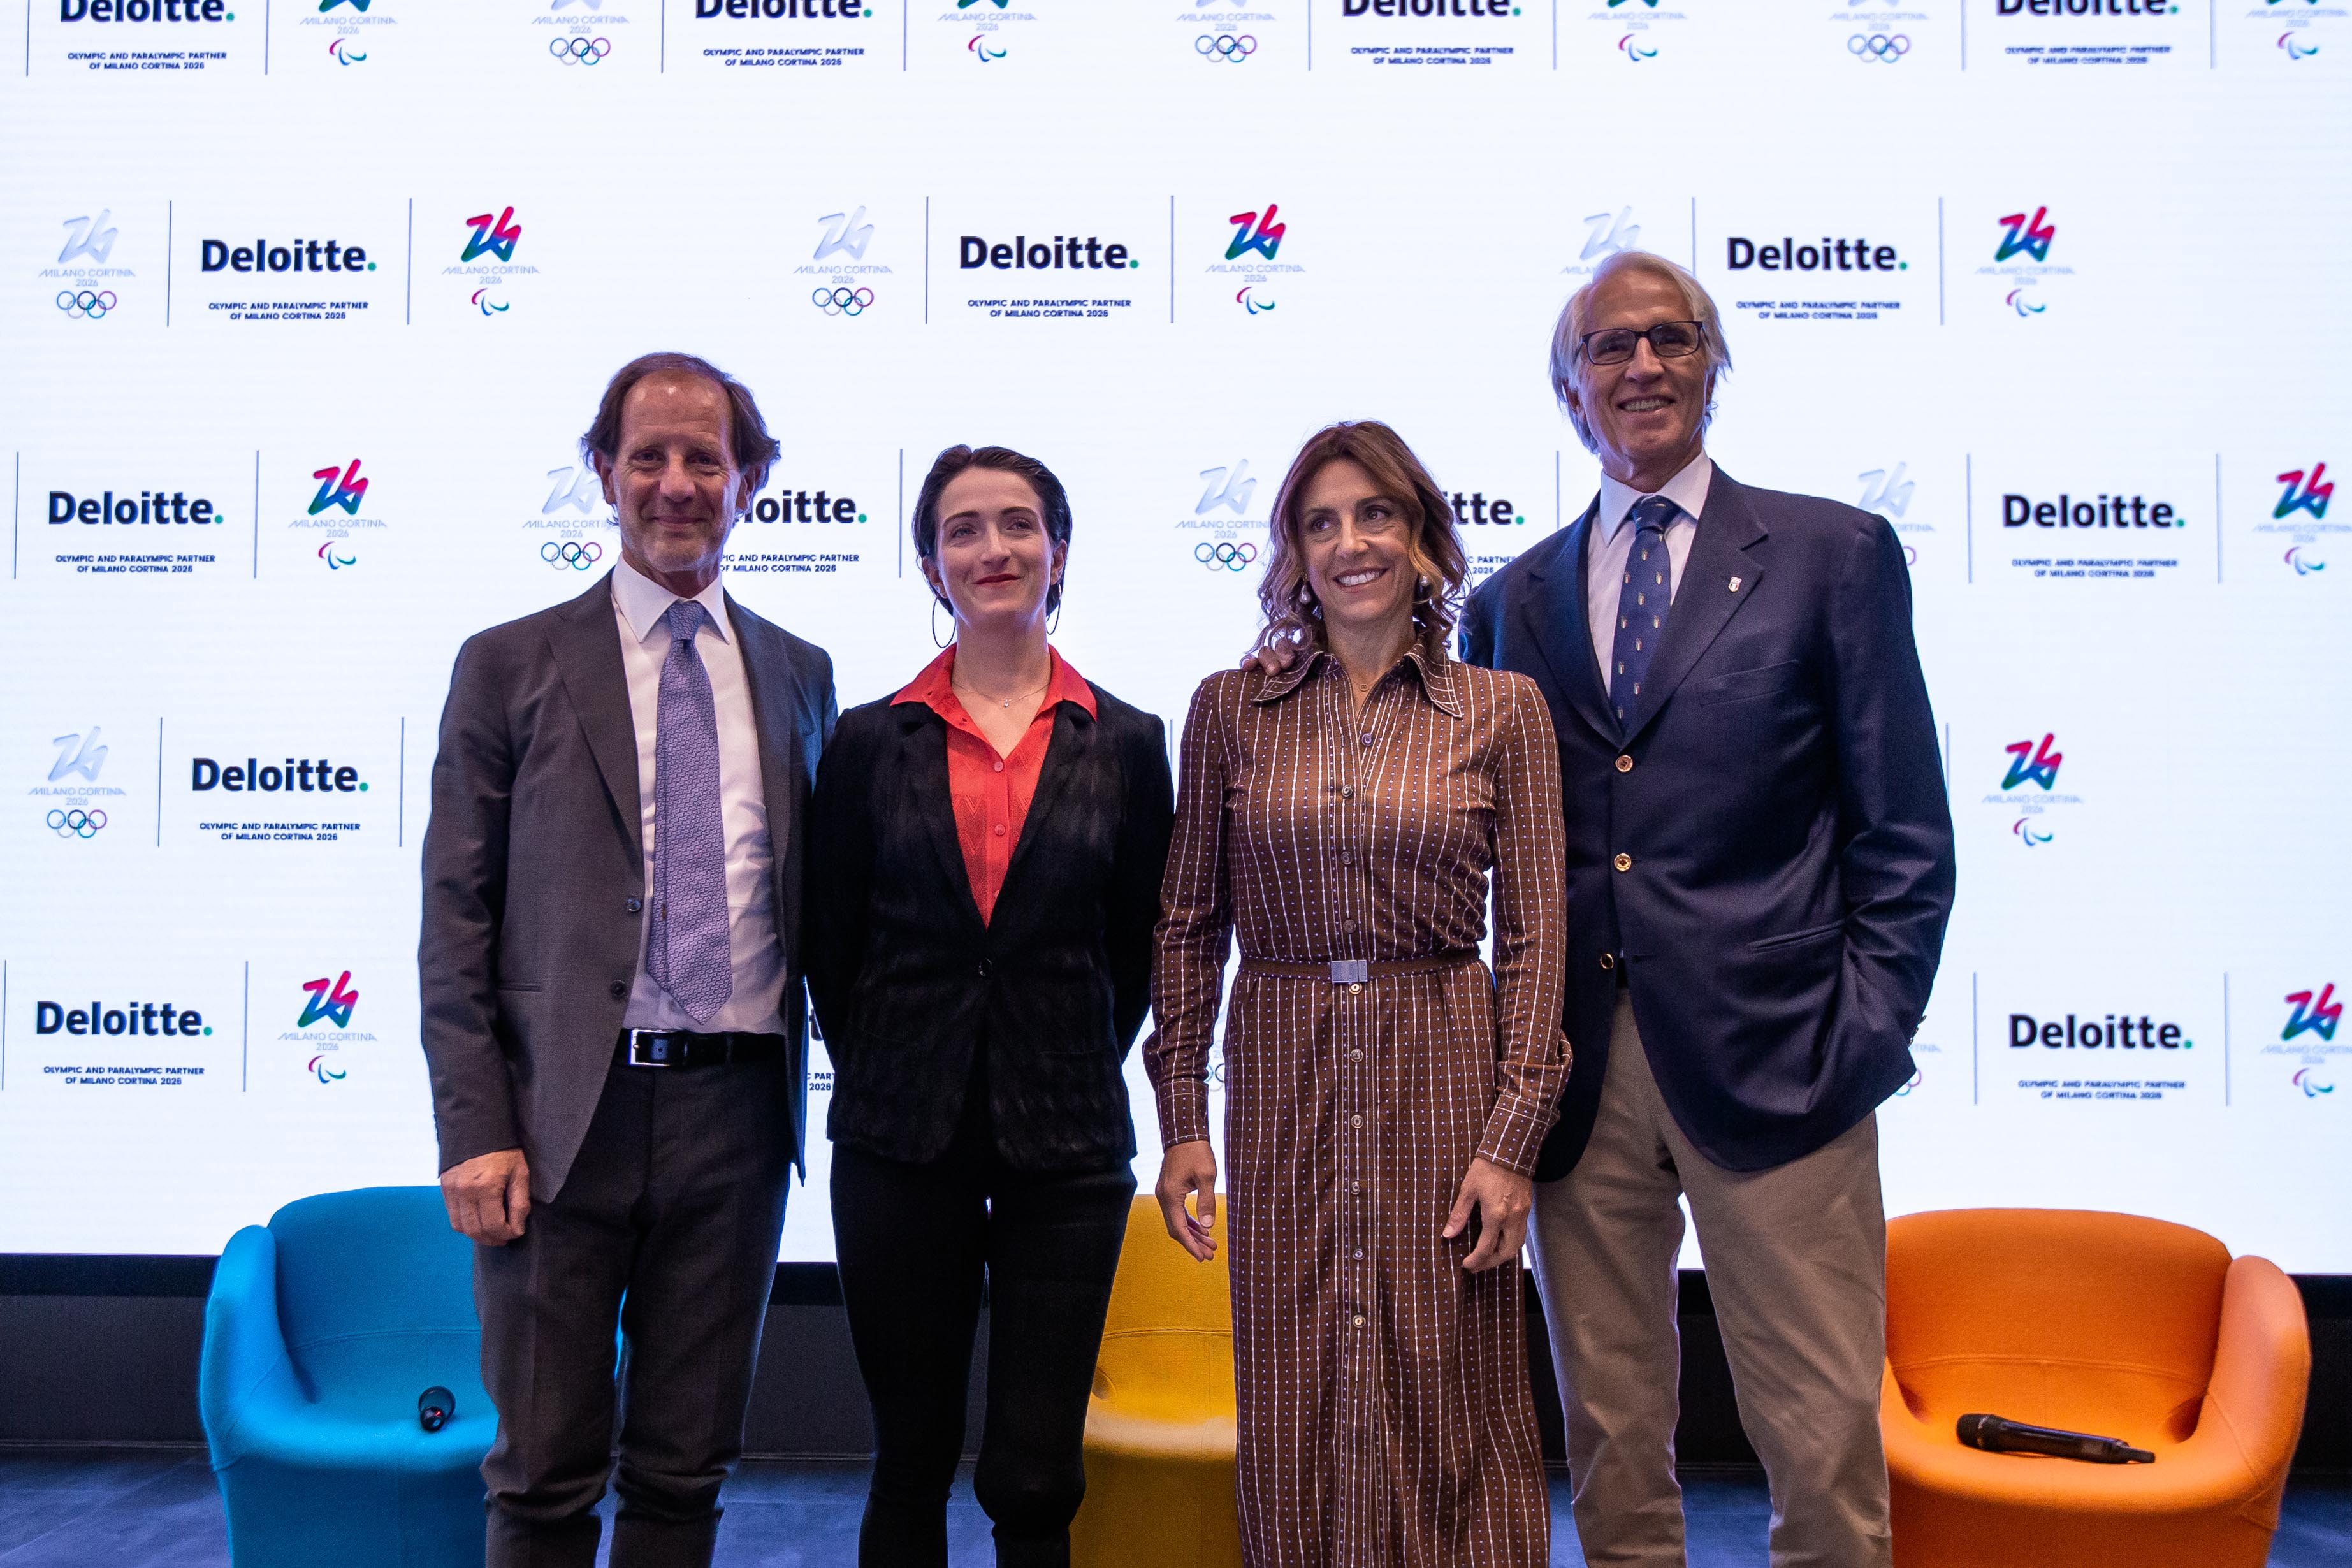 Foto dei principali referenti di Deloitte e Milano Cortina 2026